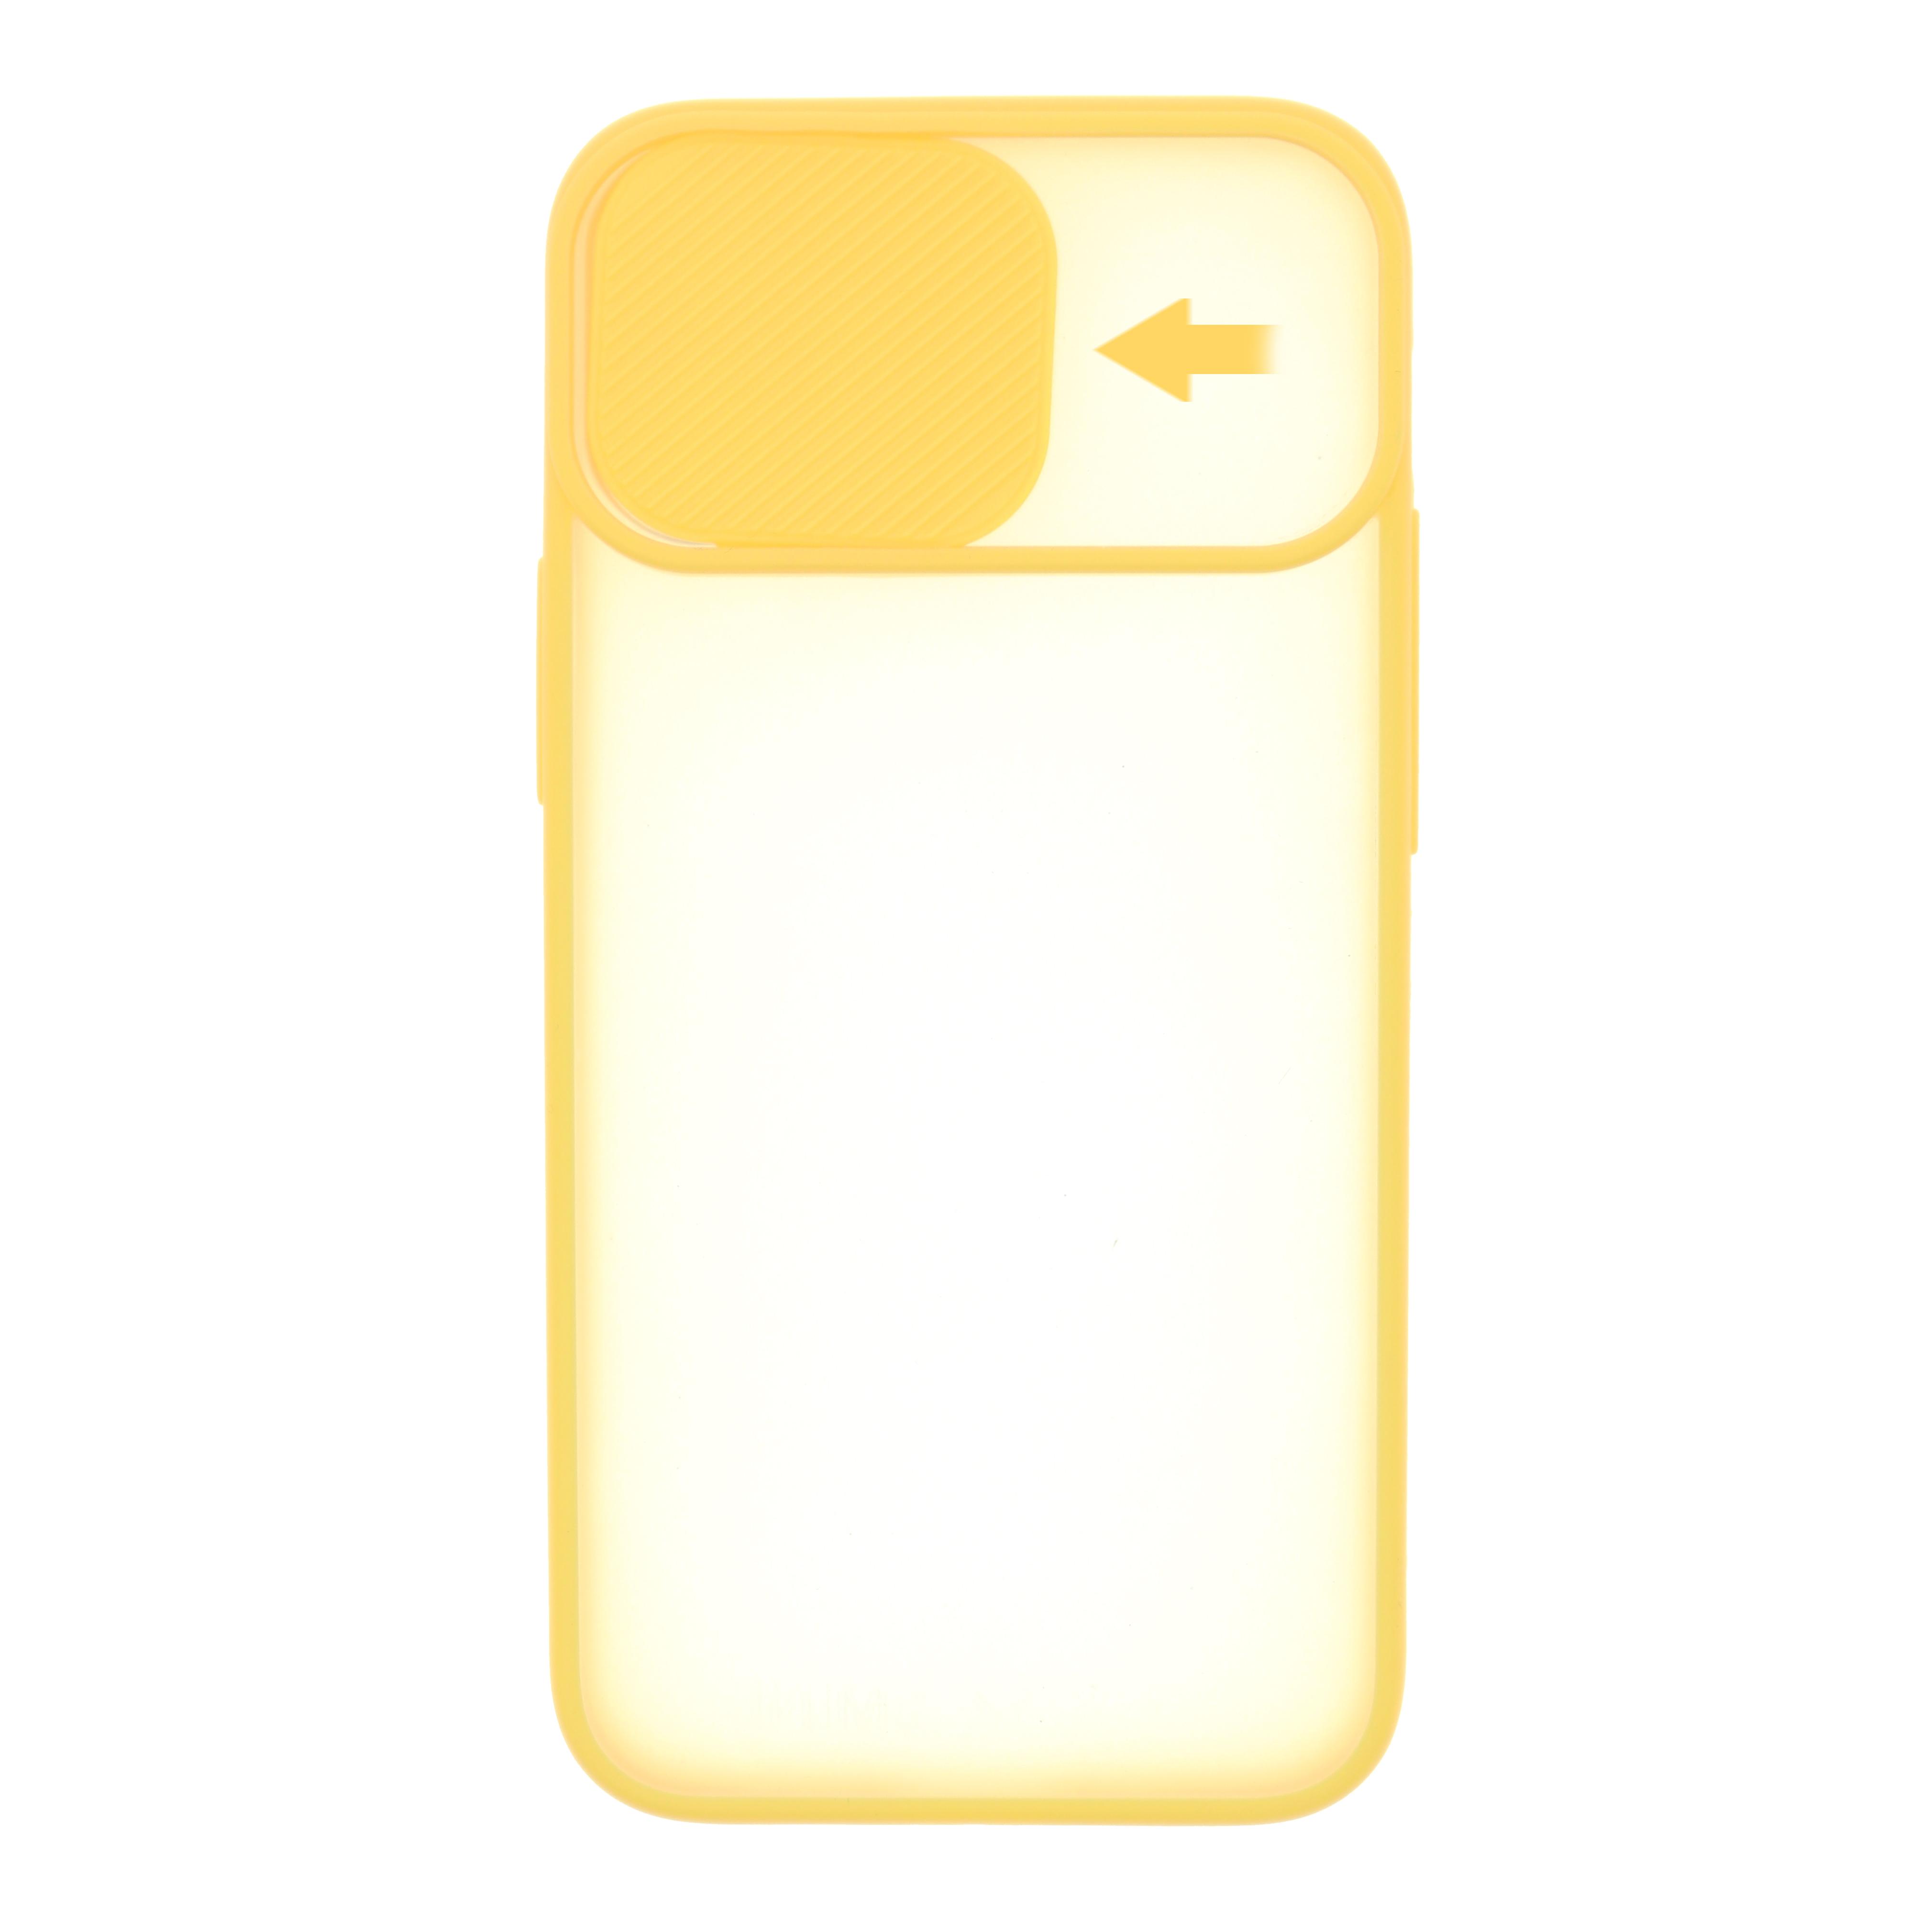 Силиконовый чехол для iPhone 12 Pro Max со шторкой защищающей камеру CG Yellow